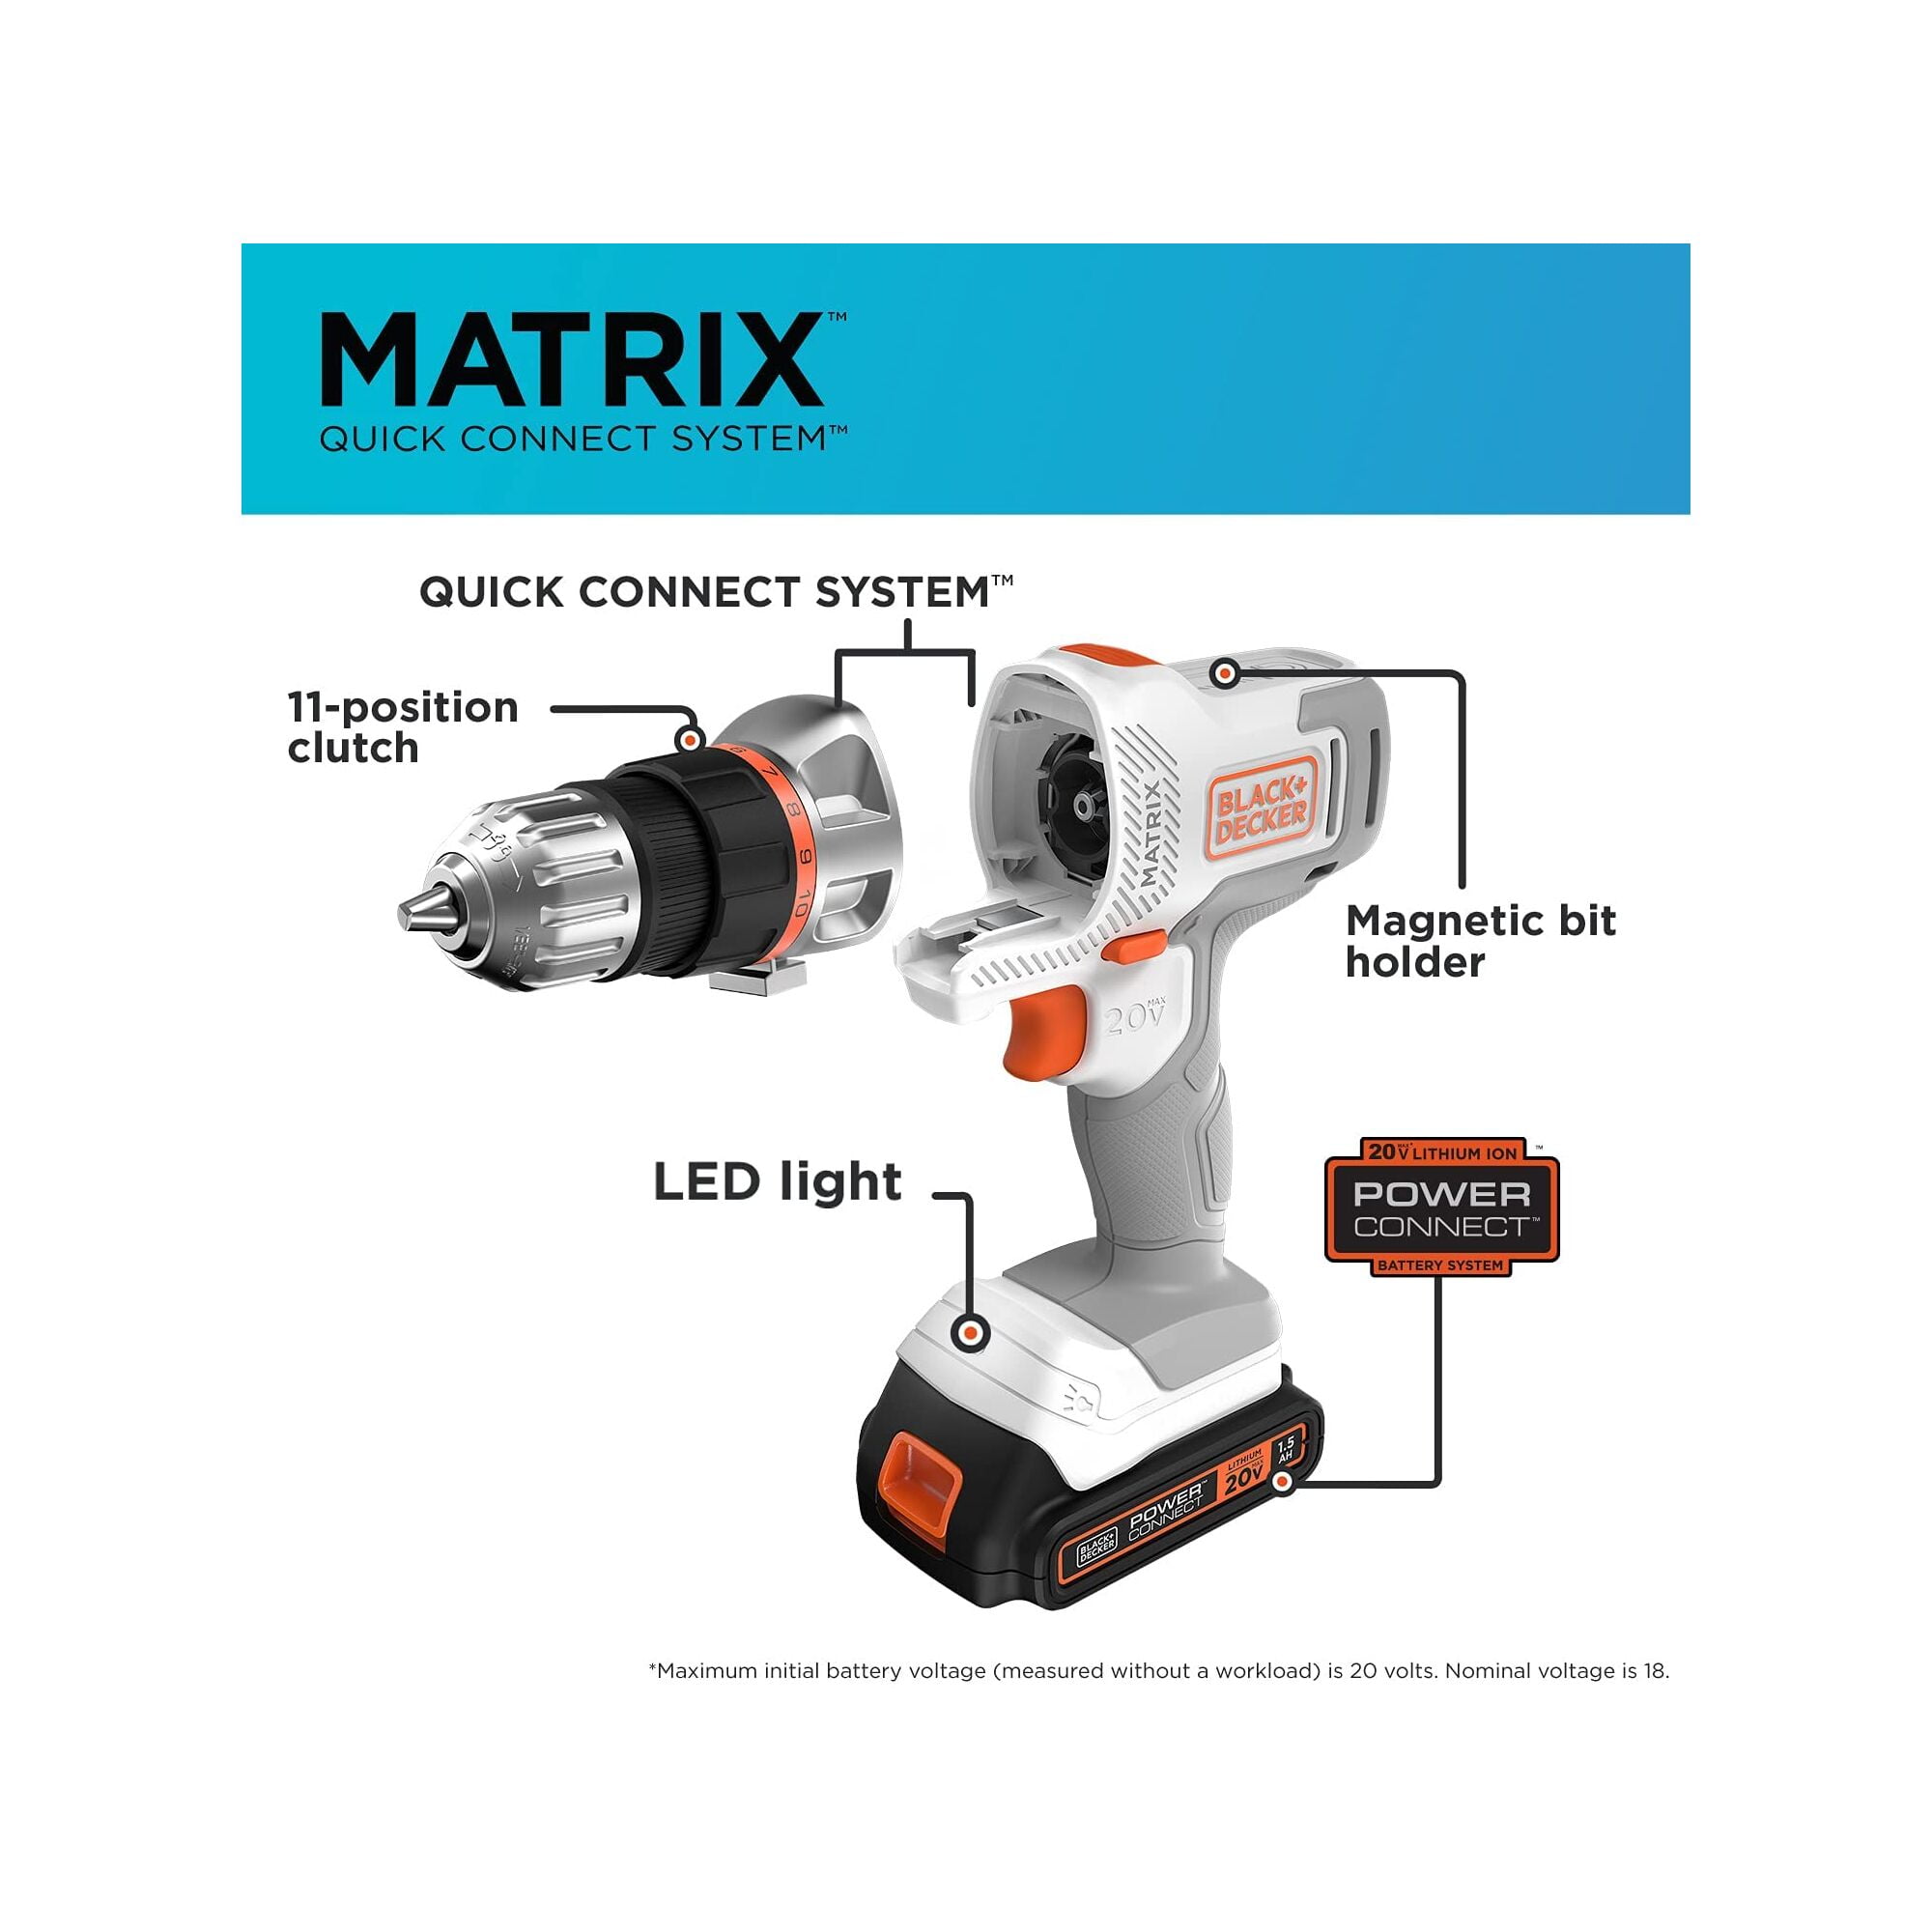 BLACK+DECKER 20V Max Matrix Cordless Combo Kit, 6-Tool, White and Orange,  Model BDCDMT1206KITWC 